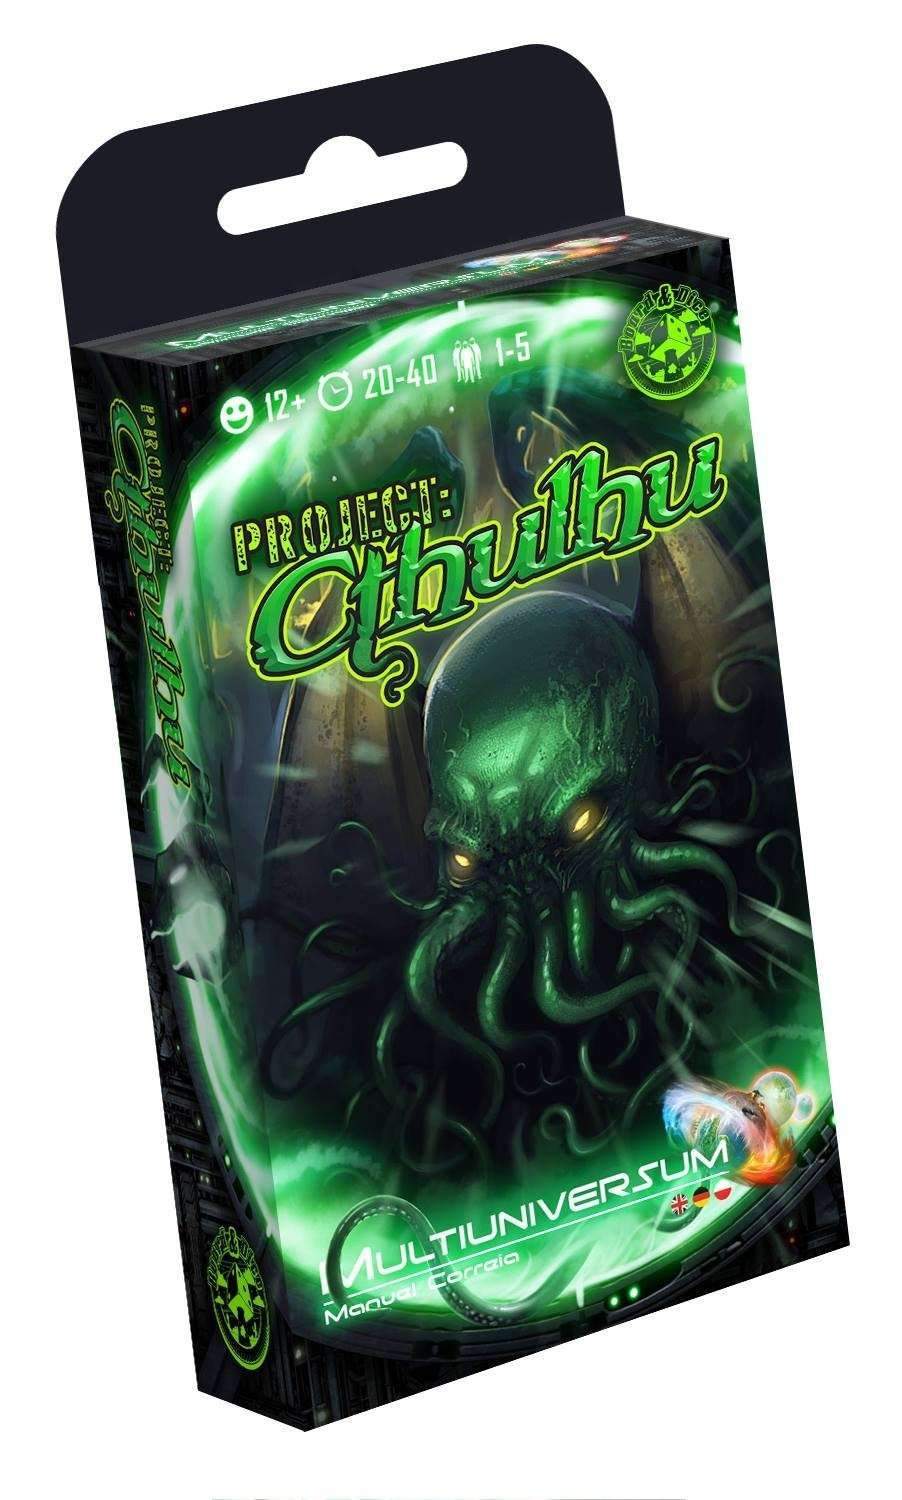 Multiuniversum - Projekt: Cthulhu (Kickstarter Special) Kickstarter -Brettspiel Board&Dice